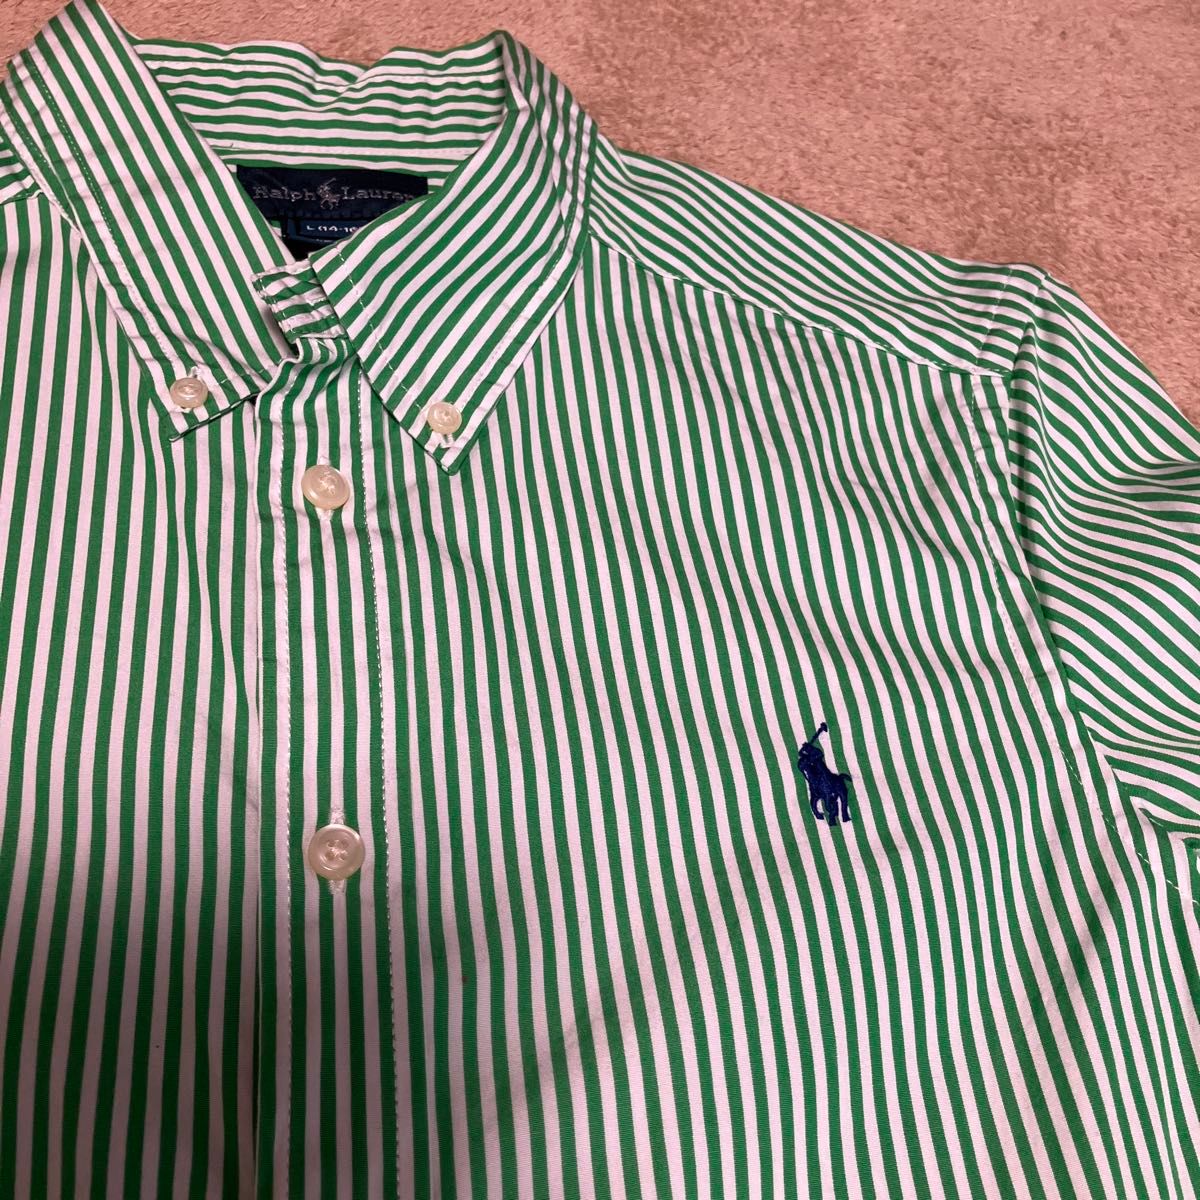 ラルフローレン ドレスシャツ(緑ストライプ) キッズL(14-16, 160cm)